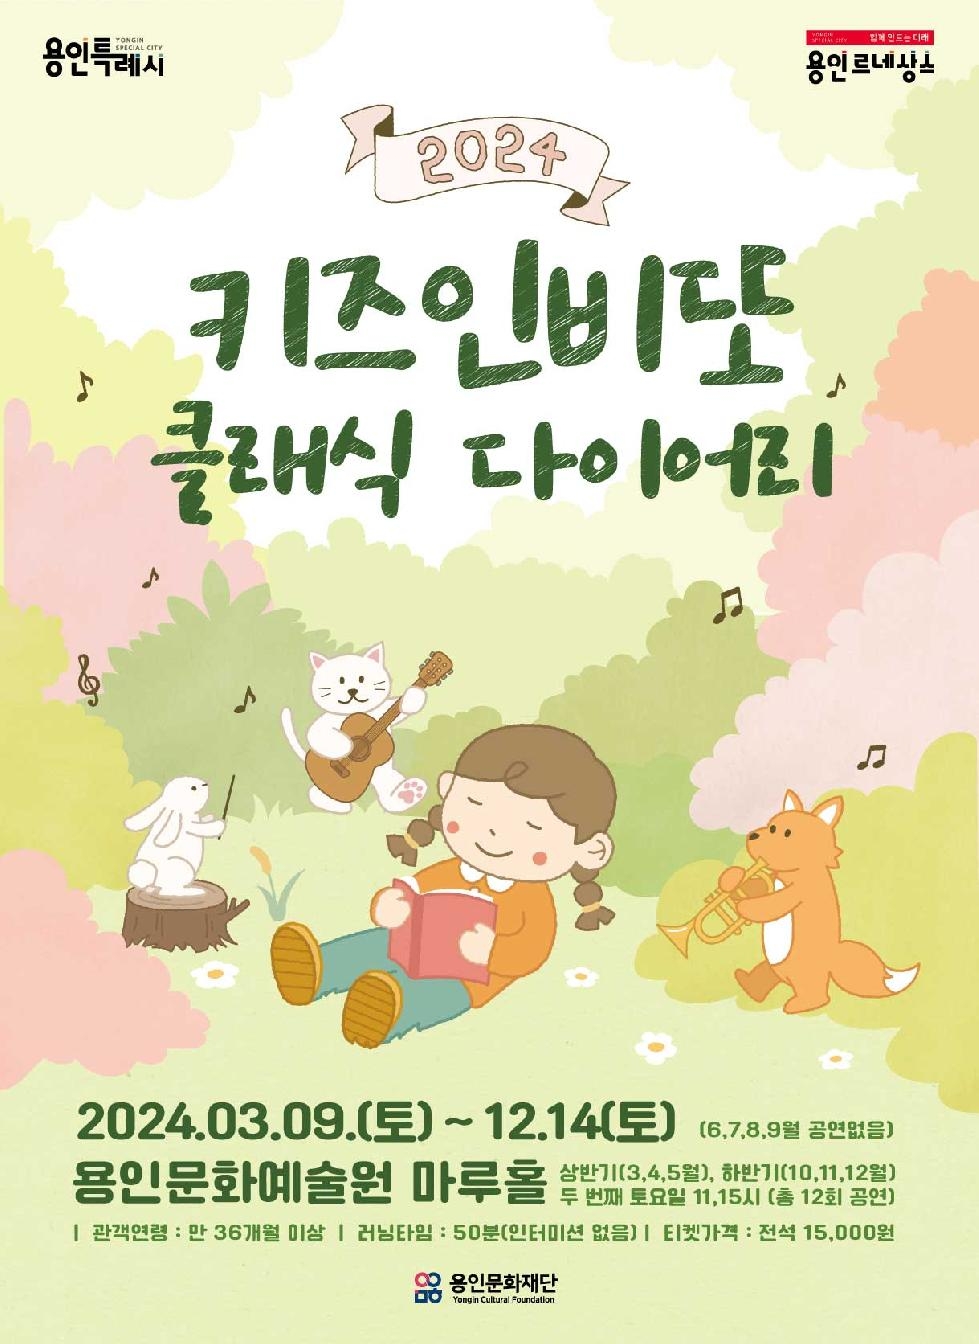 용인문화재단, 유·아동을 위한 상설 클래식 공연 ‘키즈인비또’개최